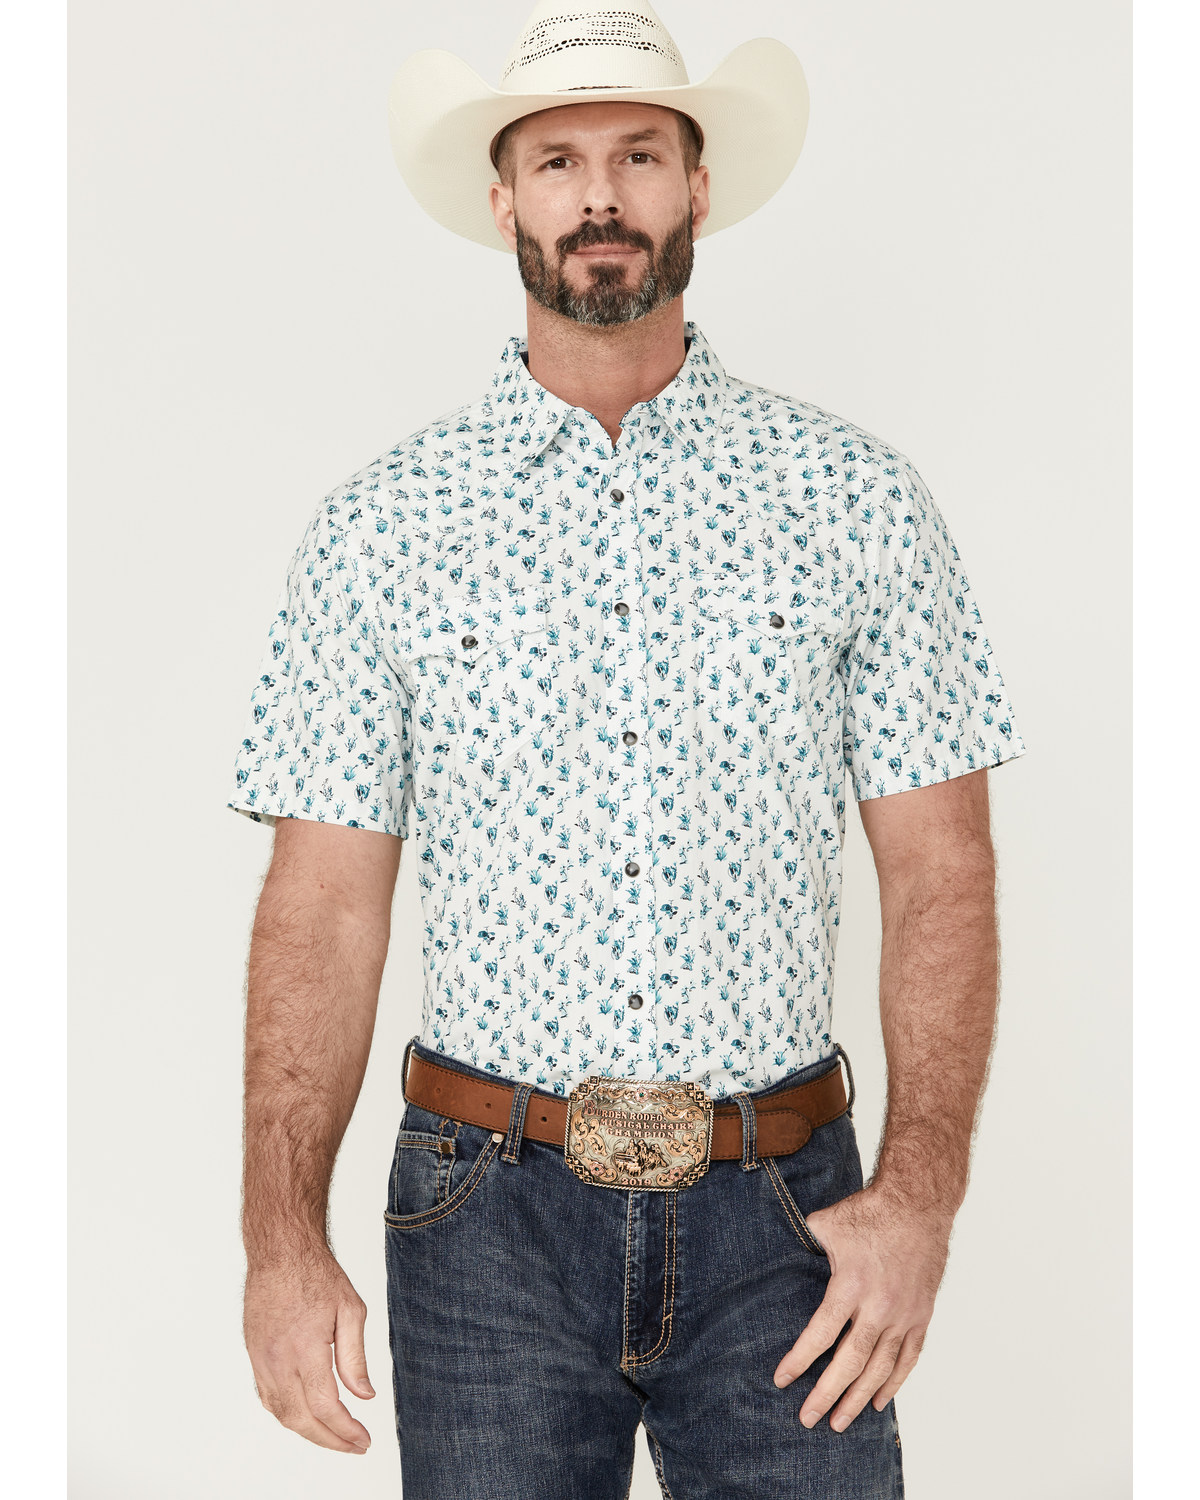 Moonshine Spirit Men's Blue Agave Floral Print Short Sleeve Snap Western Shirt